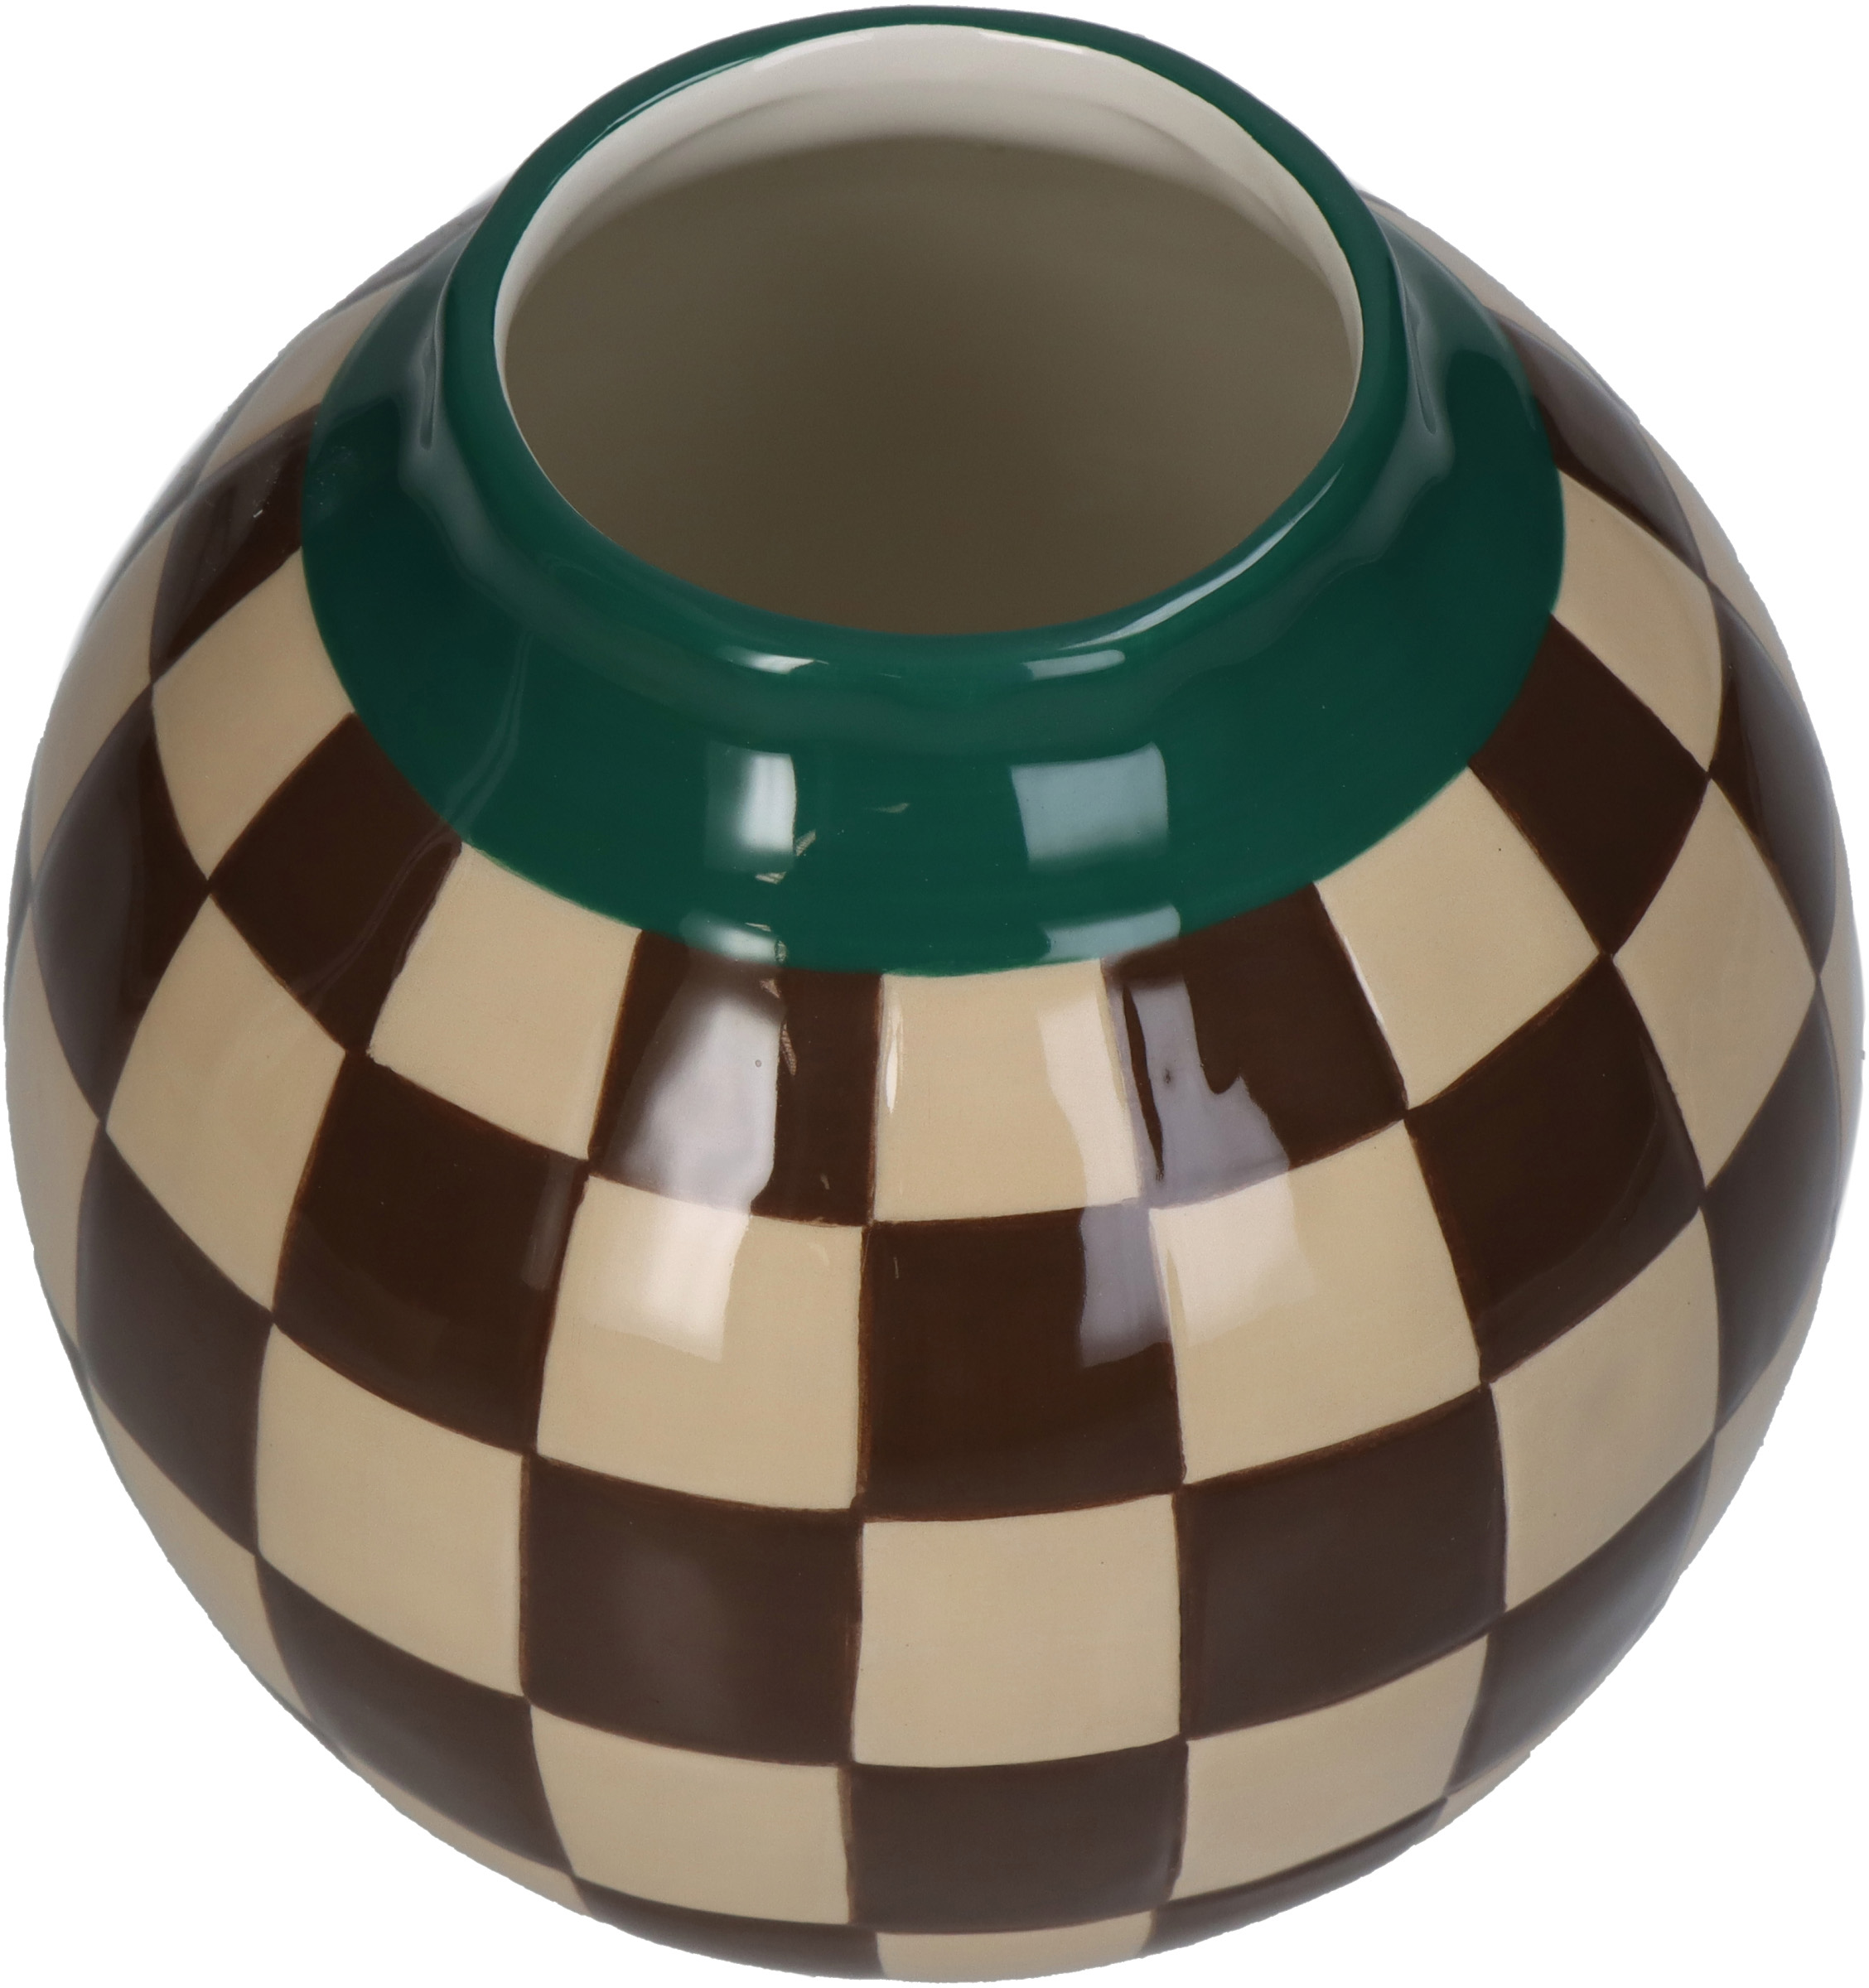 Vase Stripe Multi 16x16x16cm